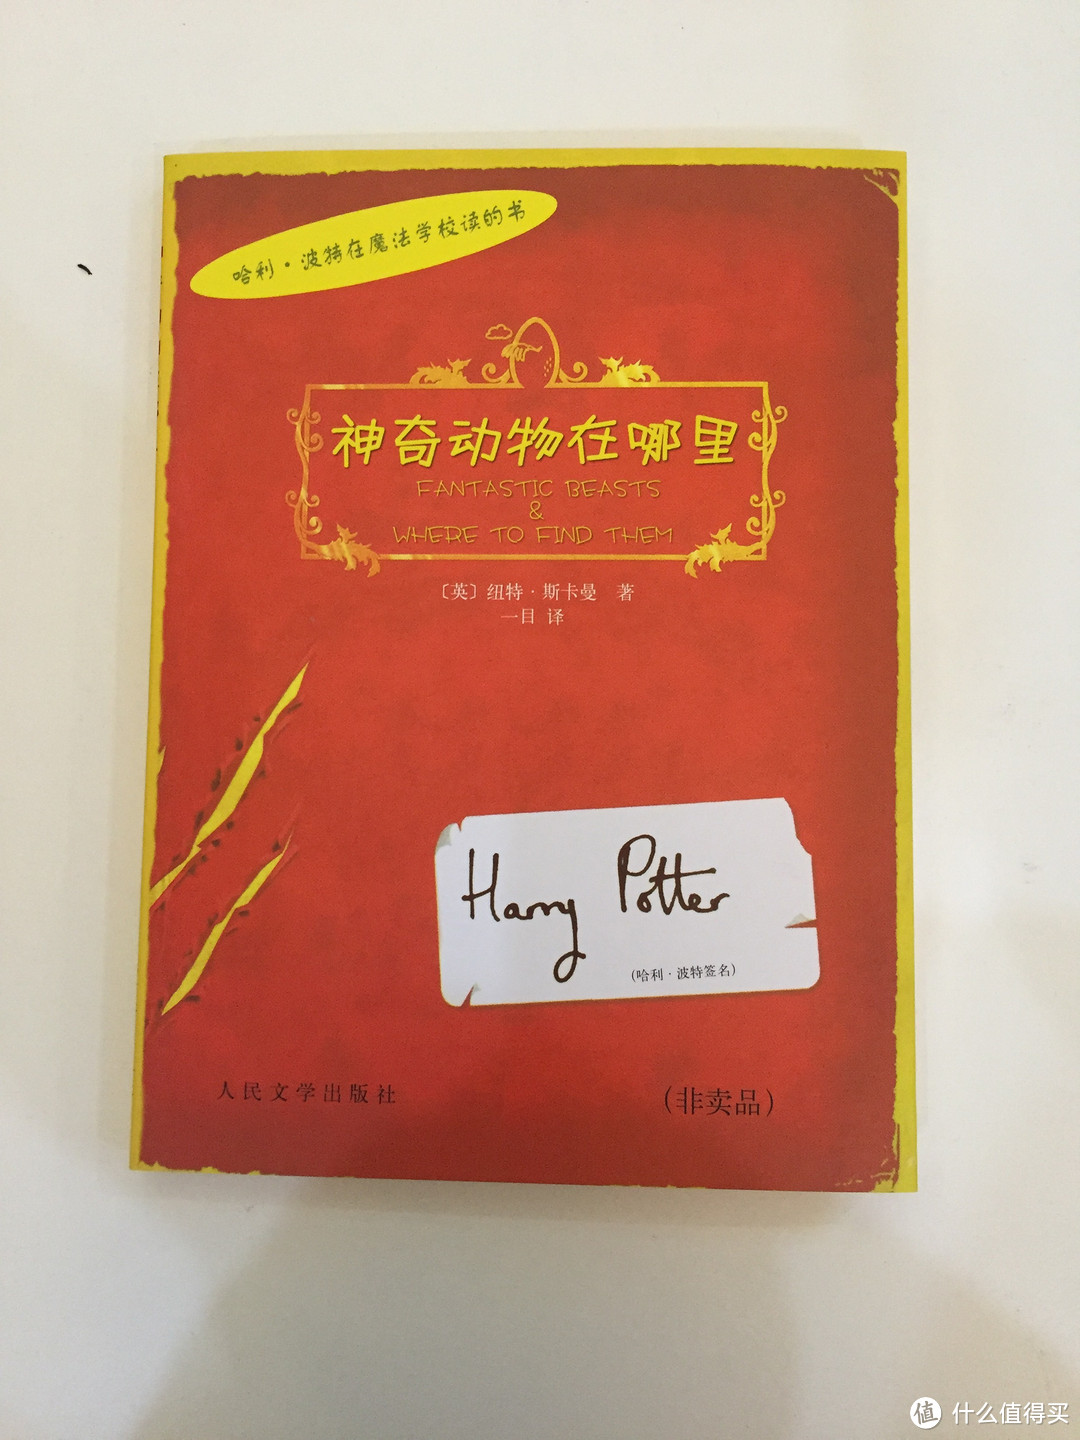 #原创新人# BUG价的《哈利·波特》套装书